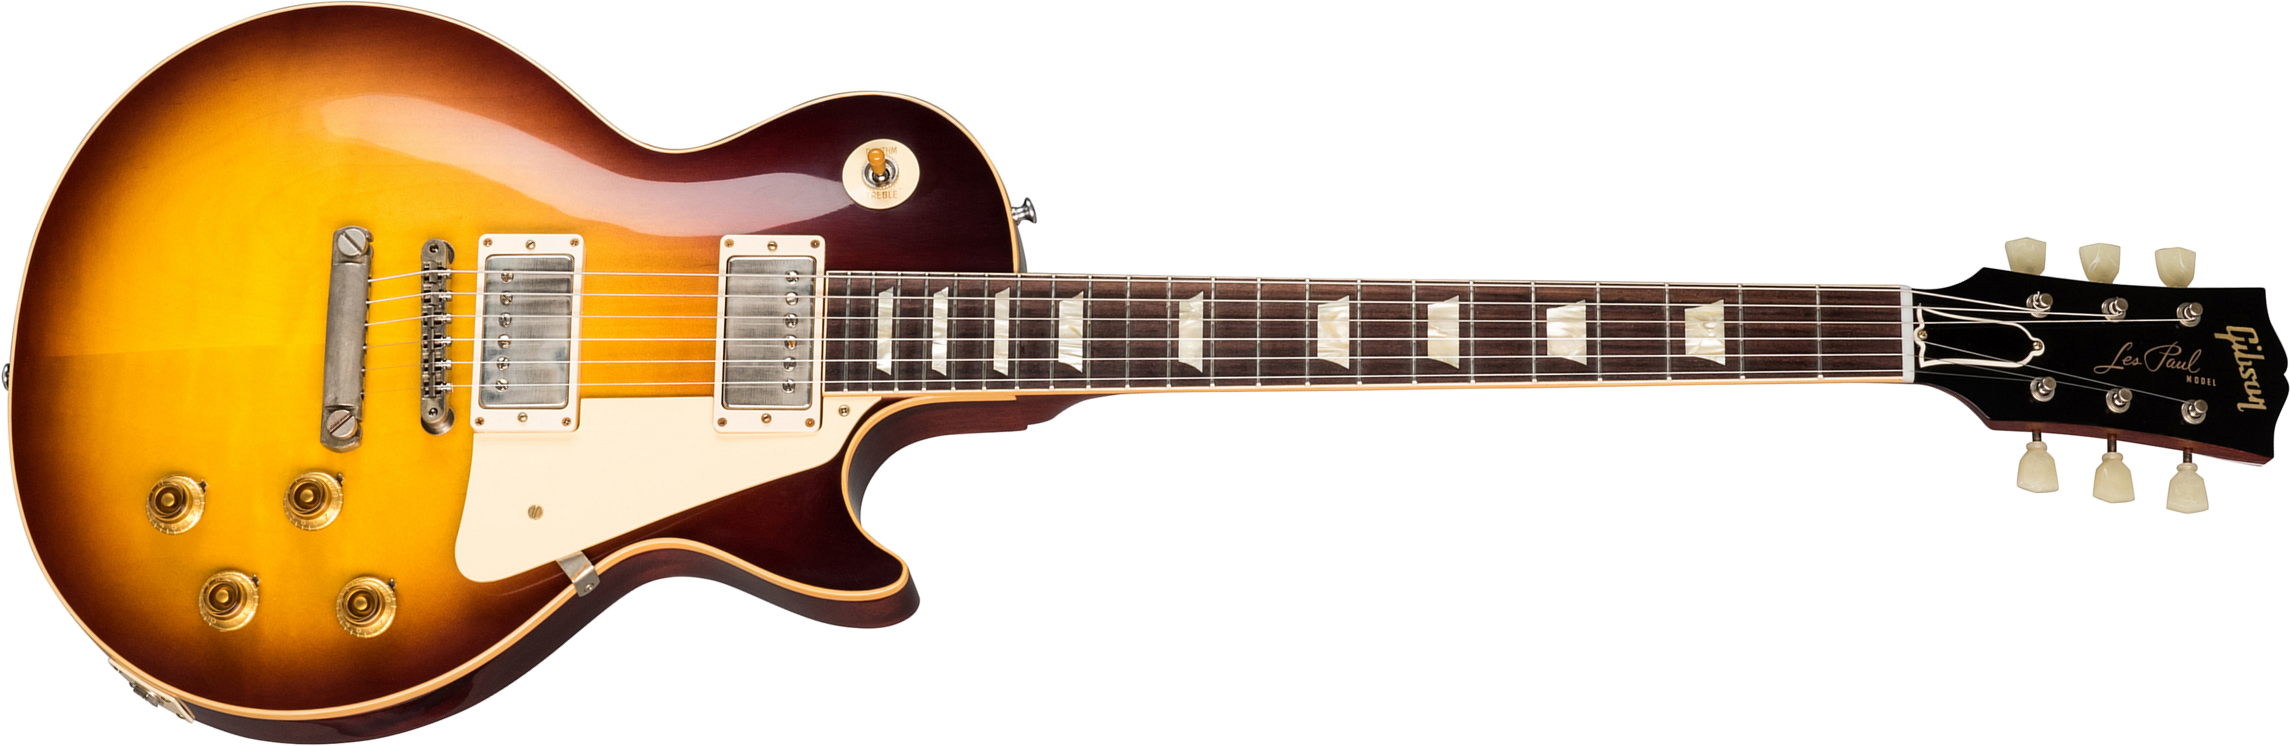 Gibson Custom Shop Les Paul Standard 1958 Reissue 2019 2h Ht Rw - Vos Bourbon Burst - Single-Cut-E-Gitarre - Main picture